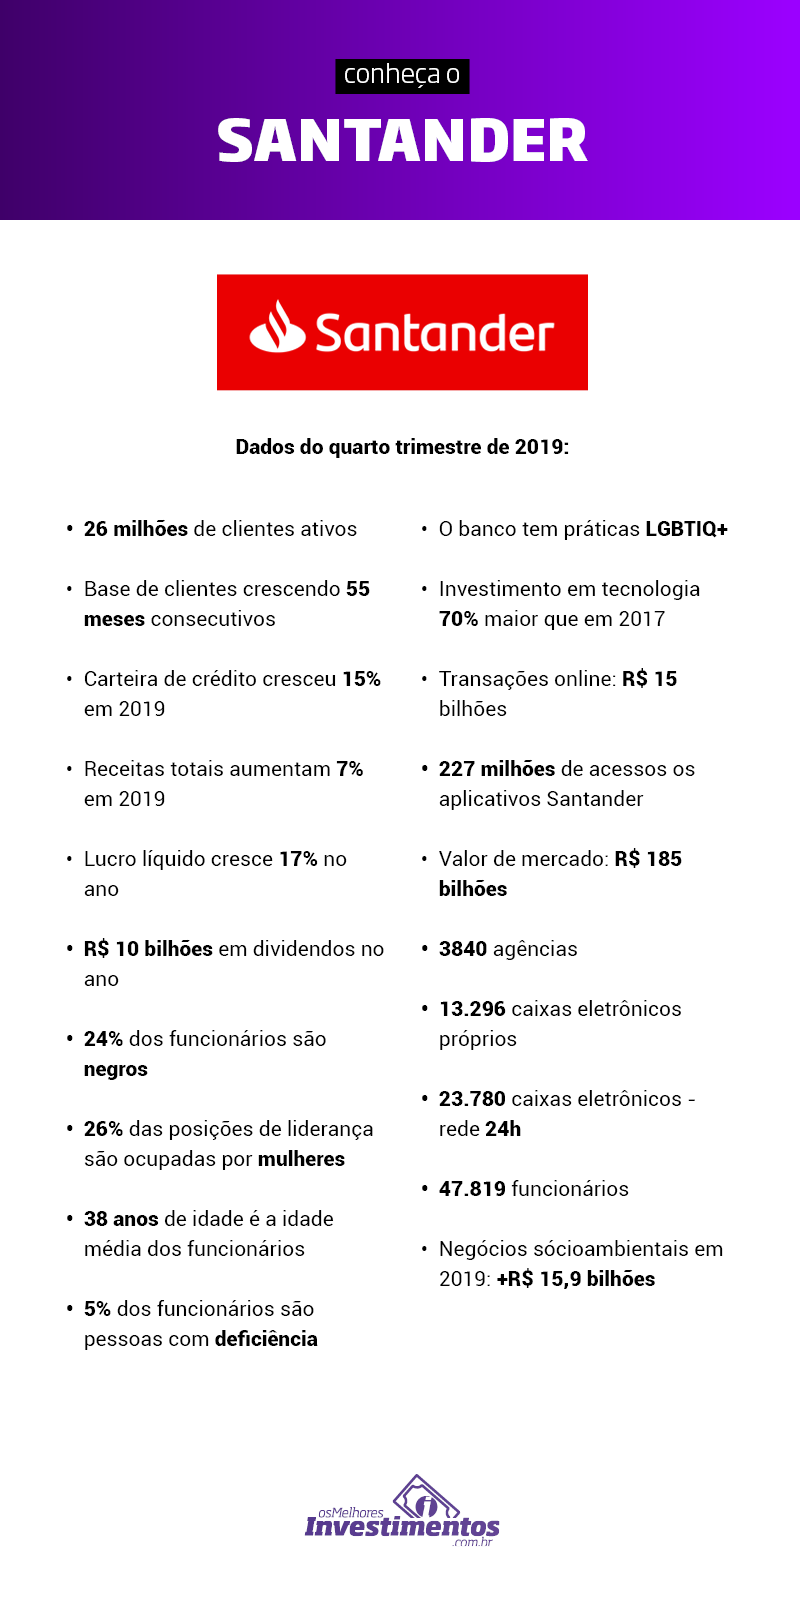 Ações do Santander - Os Melhores Investimentos - Infográfico